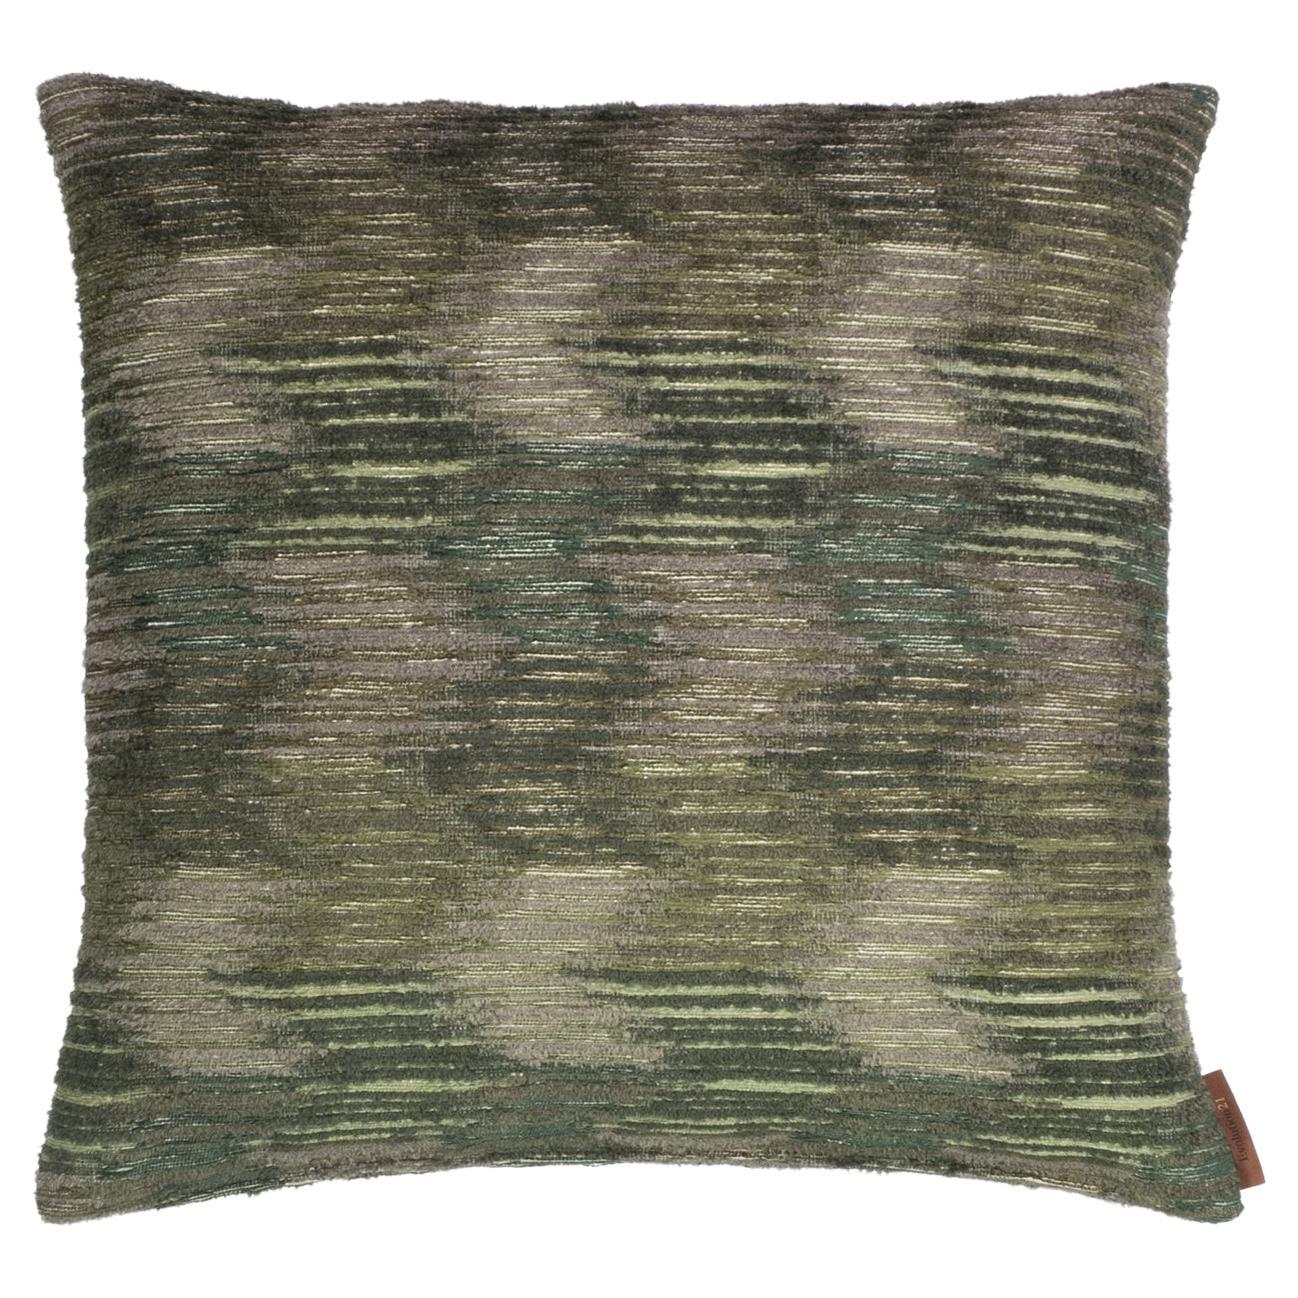 Modern Throw Pillow Green "Micca" Pistache Reverse by Evolution21